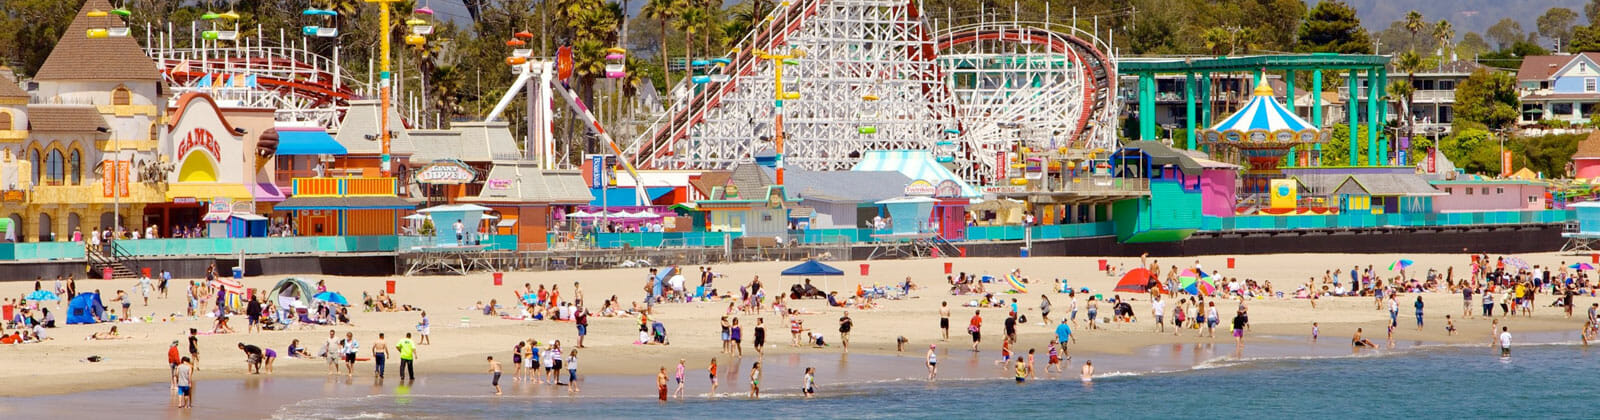 Santa Cruz Boardwalk: Kaliforniens historischer Vergnügungspark am Meer